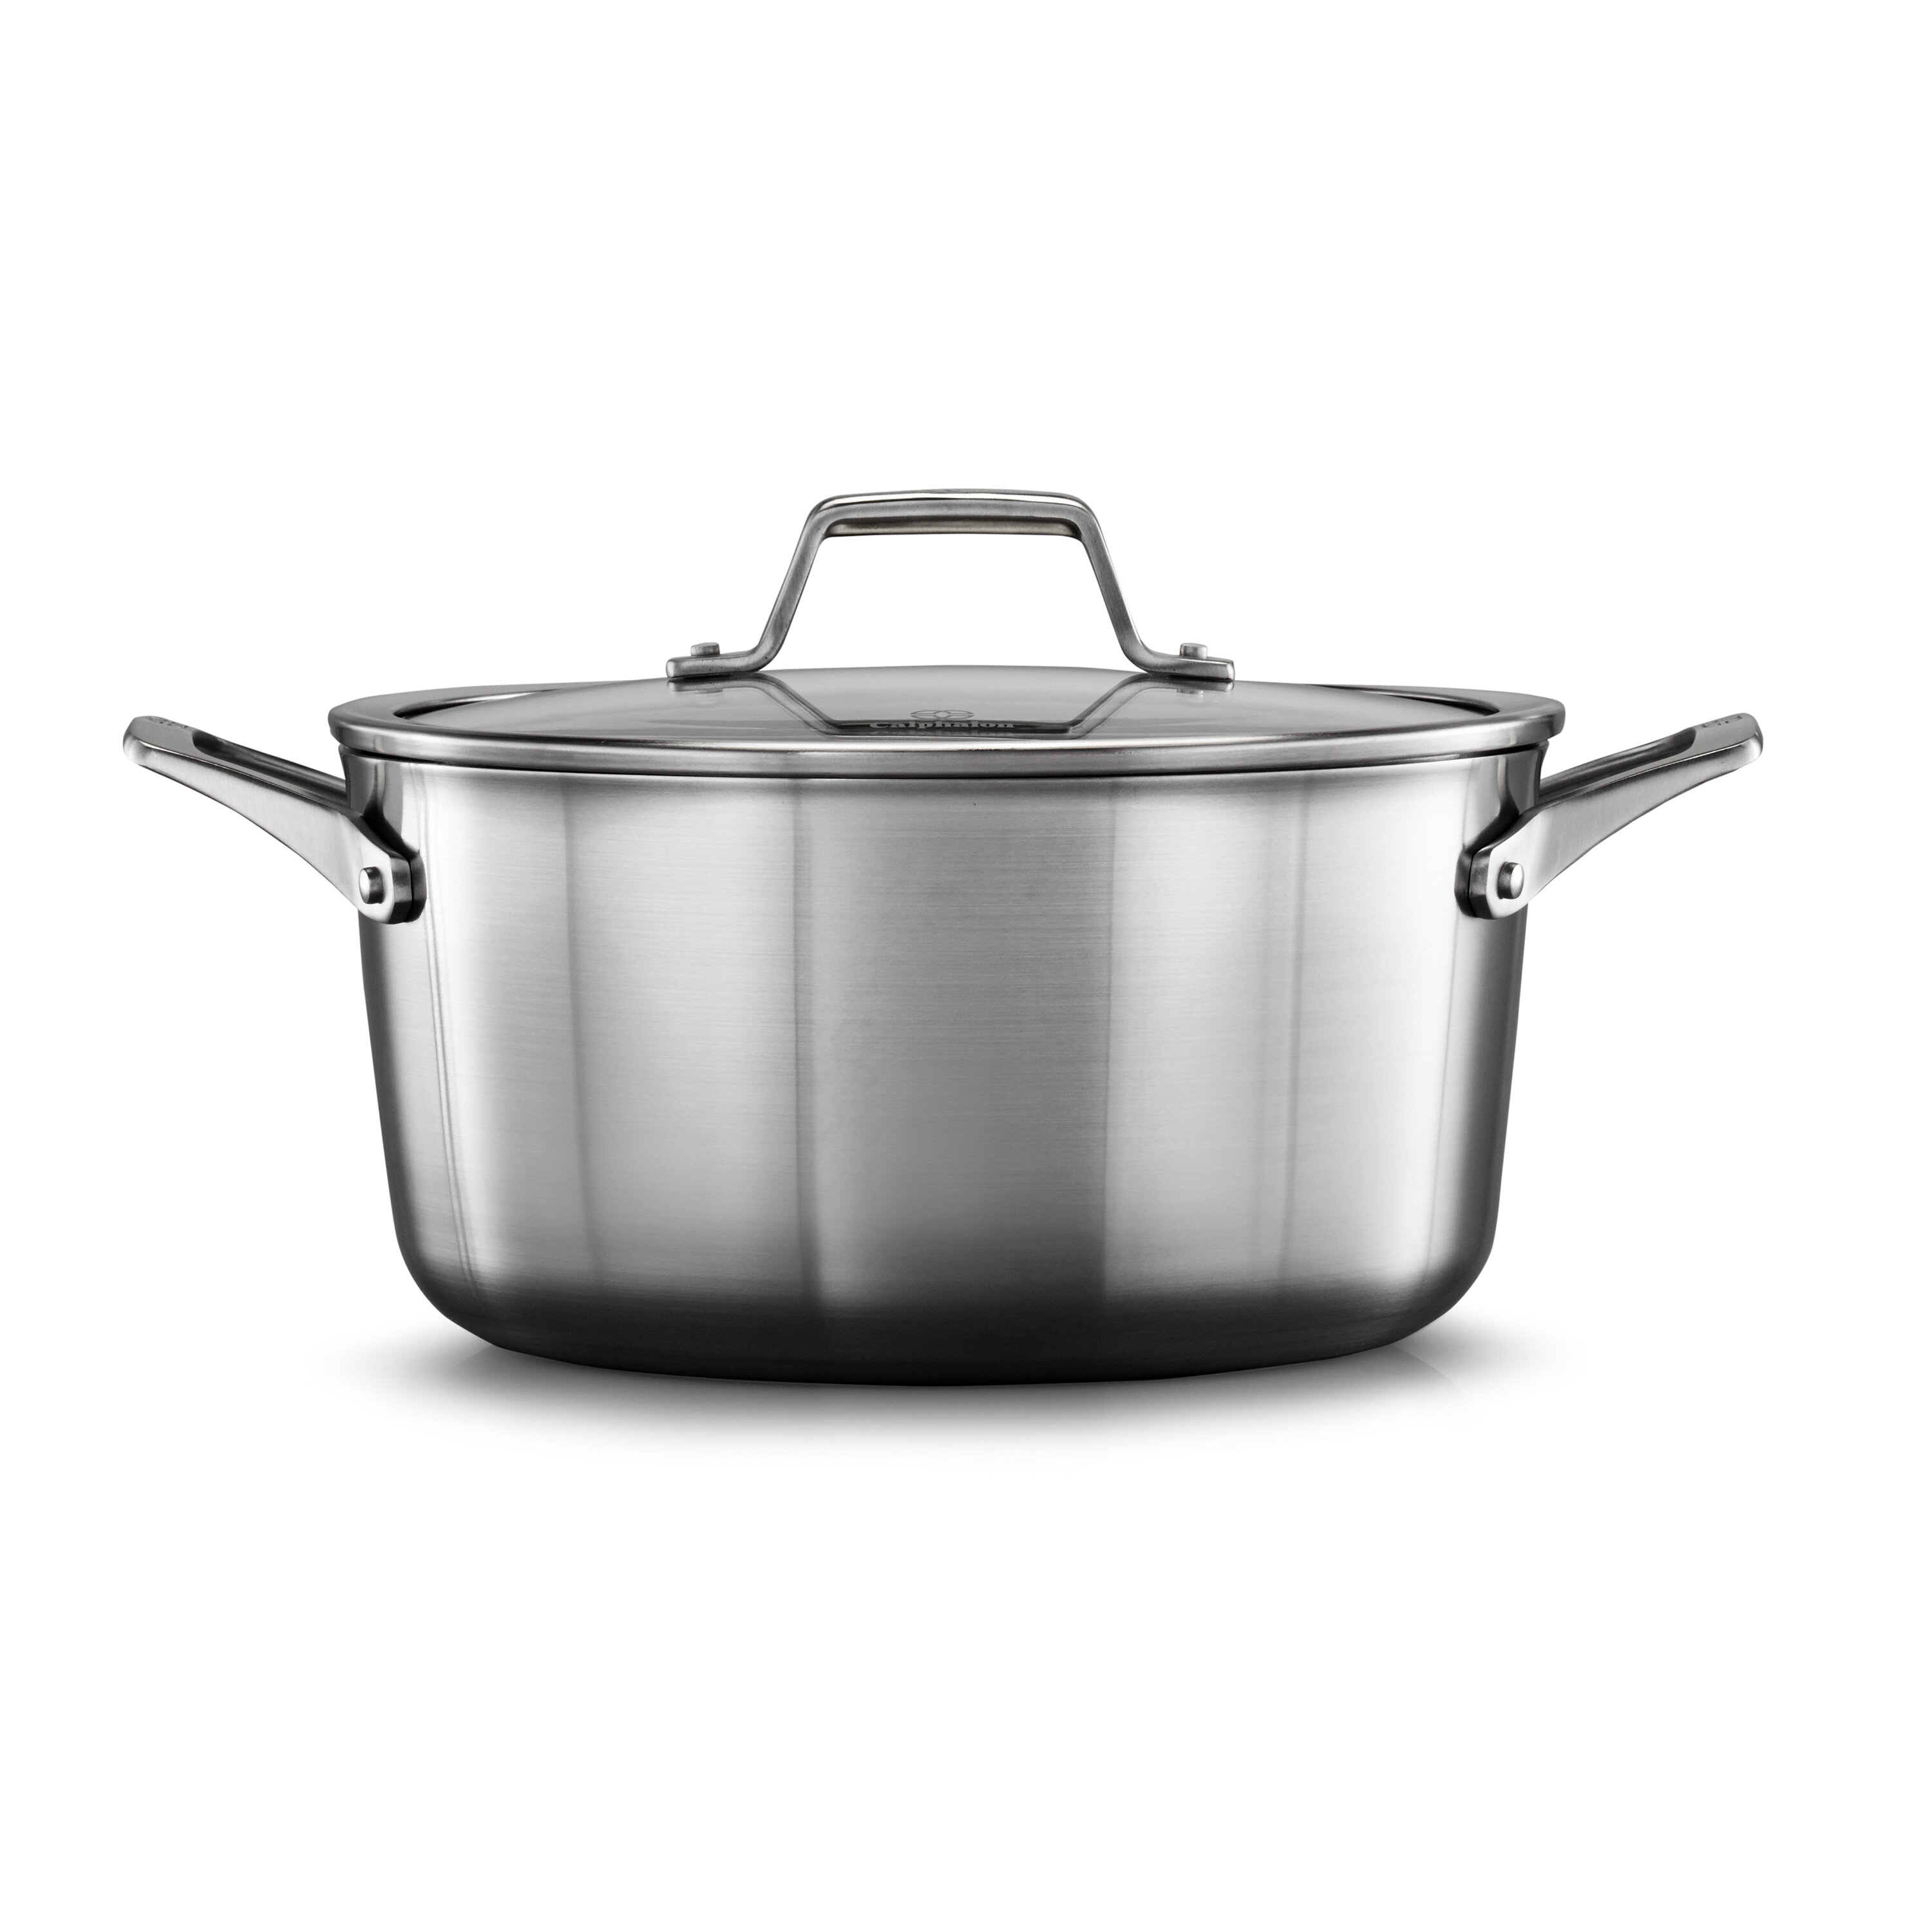 Stock Soup Pot 20 cm Stockpot Casserole Saucepan Pan Stainless Steel Glass Lid 